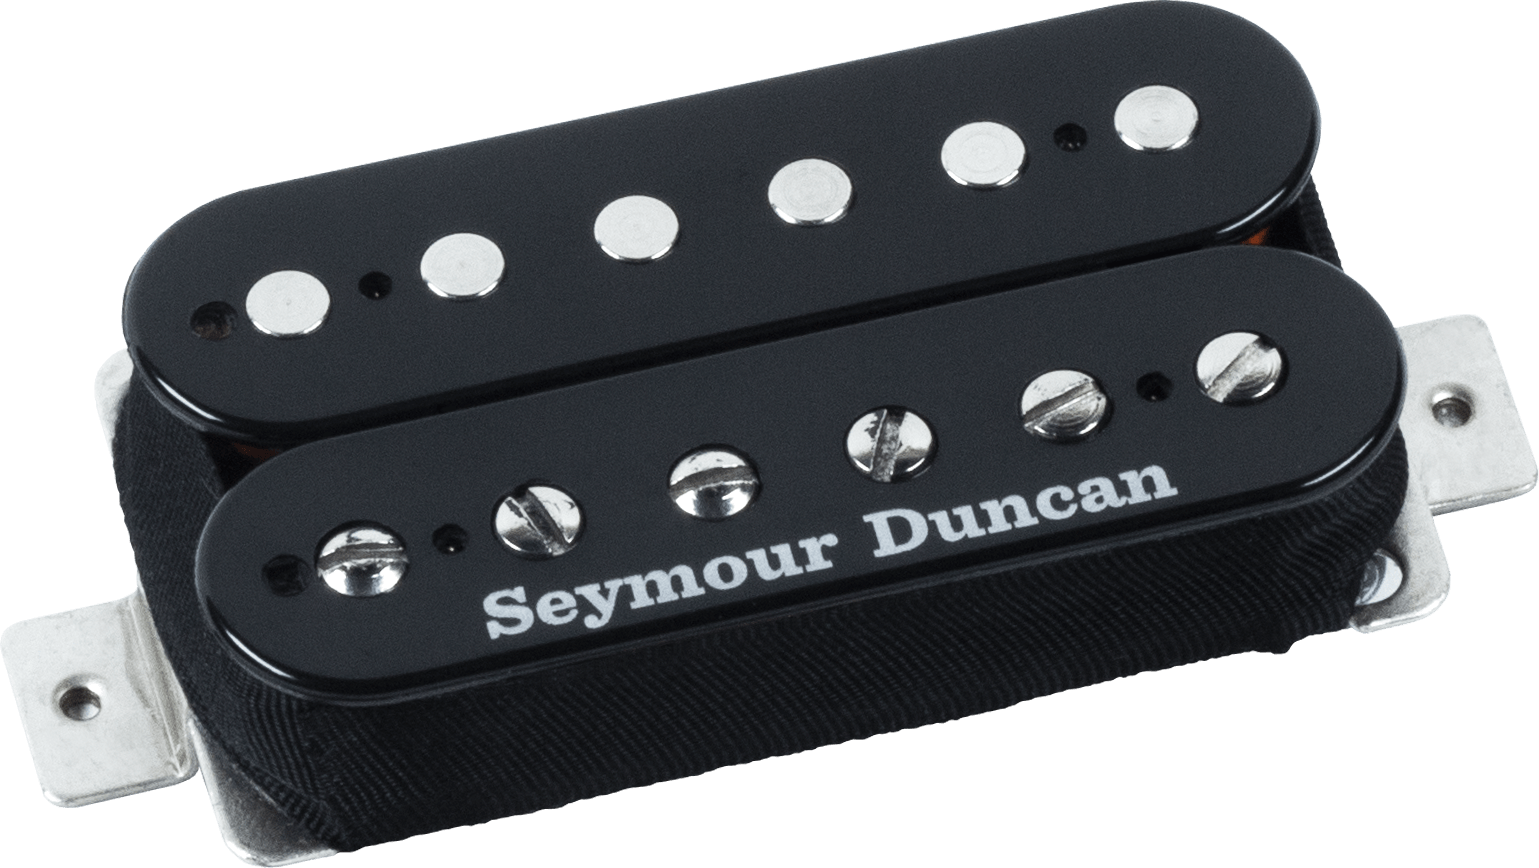 Seymour Duncan Sh-14 Custom 5 - Bridge Humbucker - Black - Electric guitar pickup - Main picture